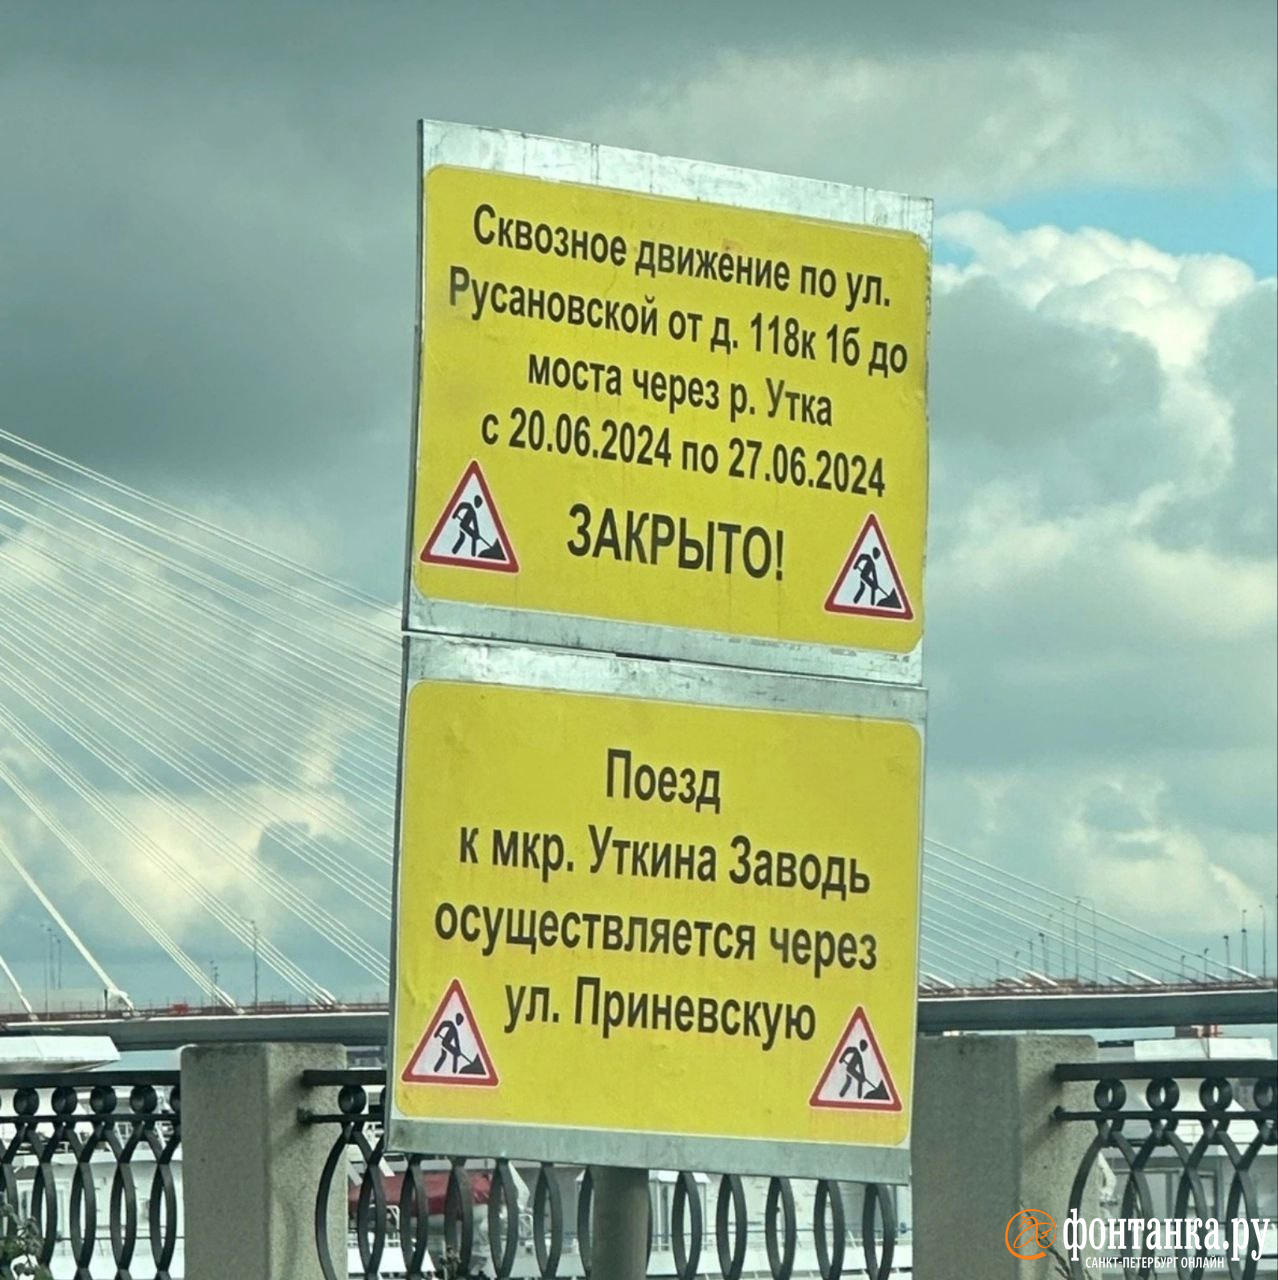 Вывезти пробки с закрытой Русановской обещает «поезд». Но его тоже «не видно»